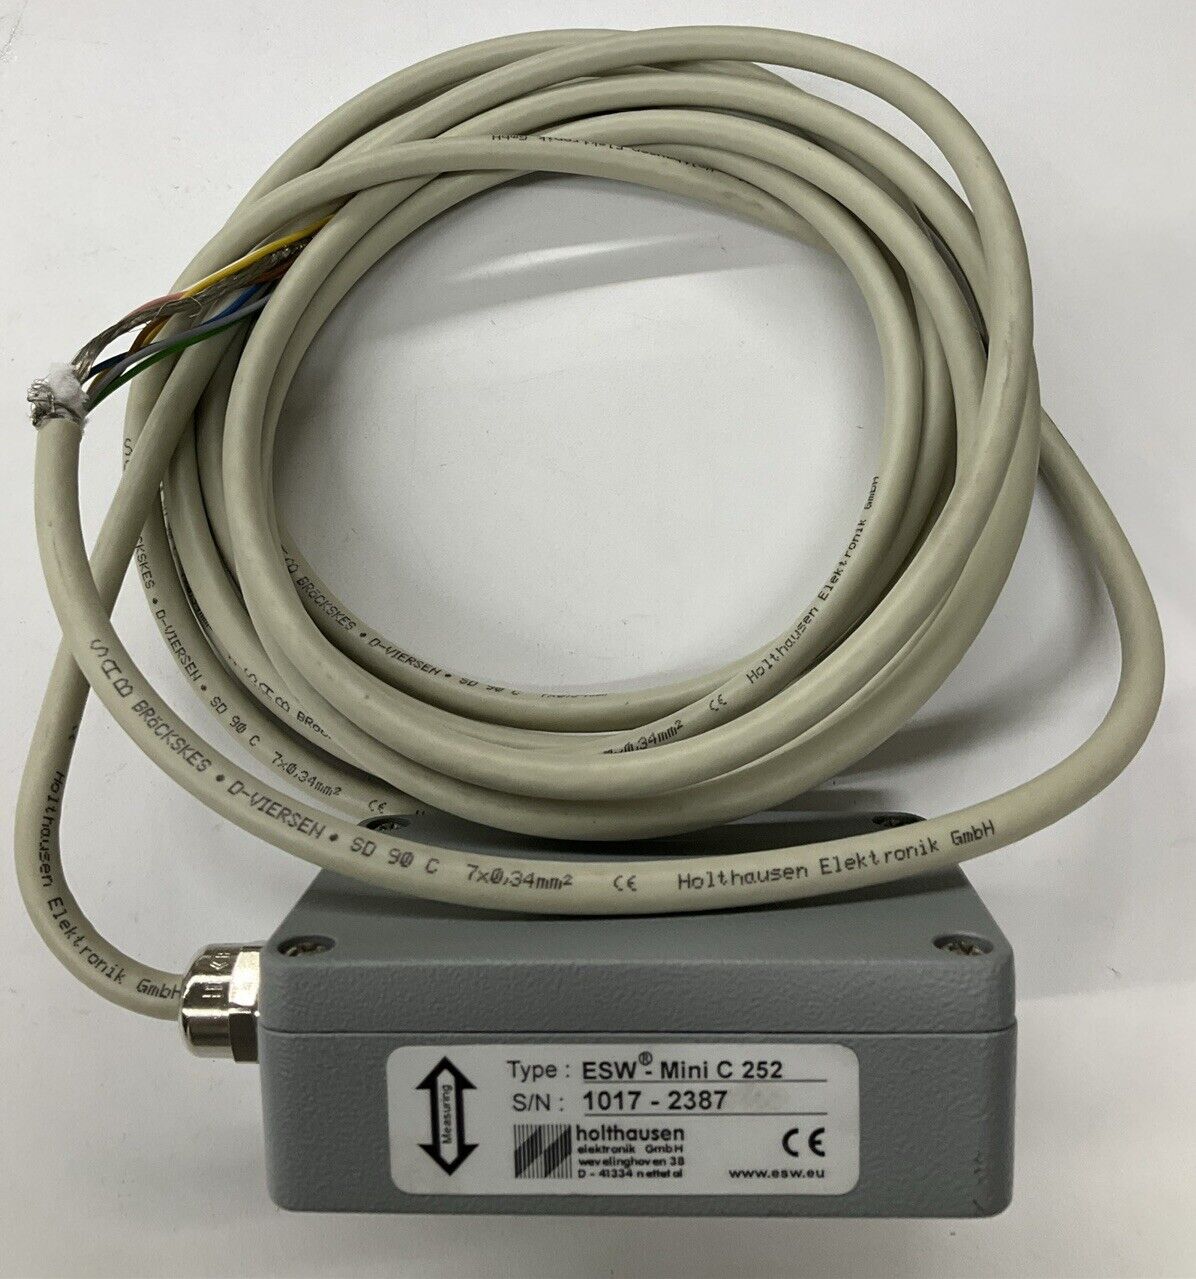 Holthausen ESW-Mini C-252 Vibration Pick-up Sensor(CBL 108) - 0